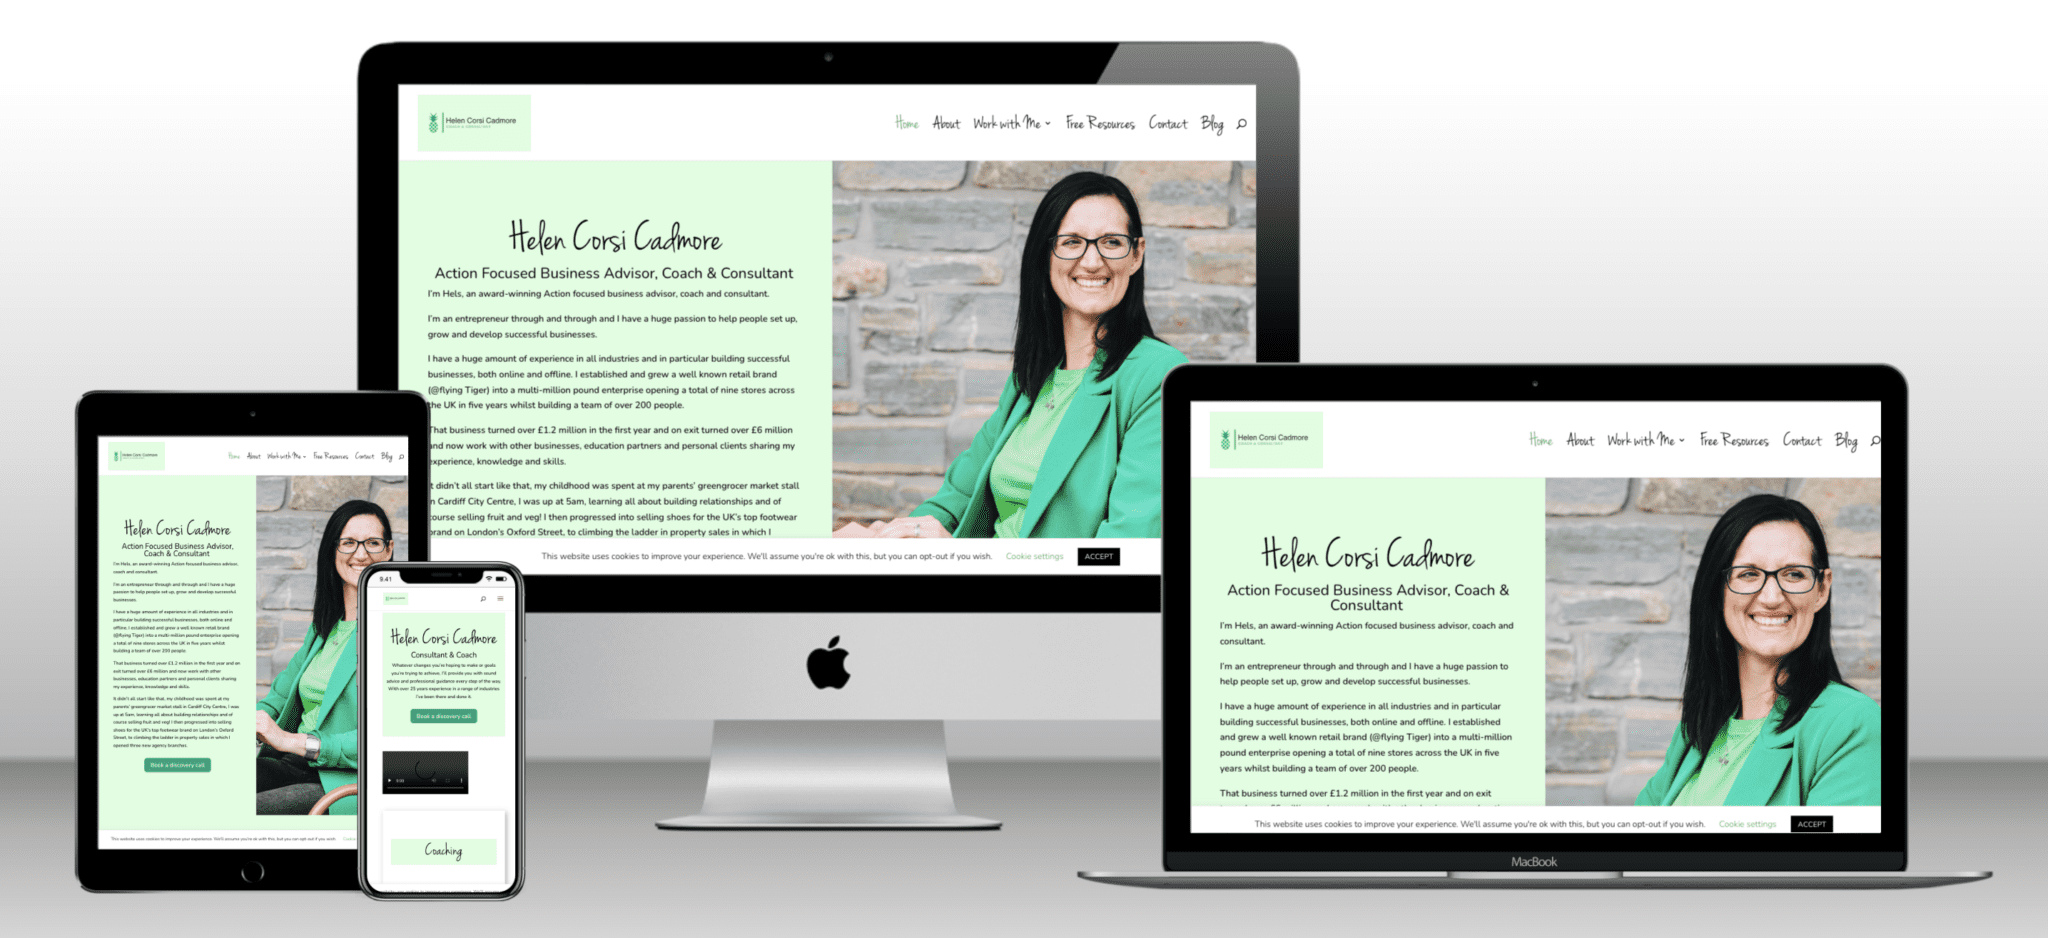 Helen Corsi Cadmore Website